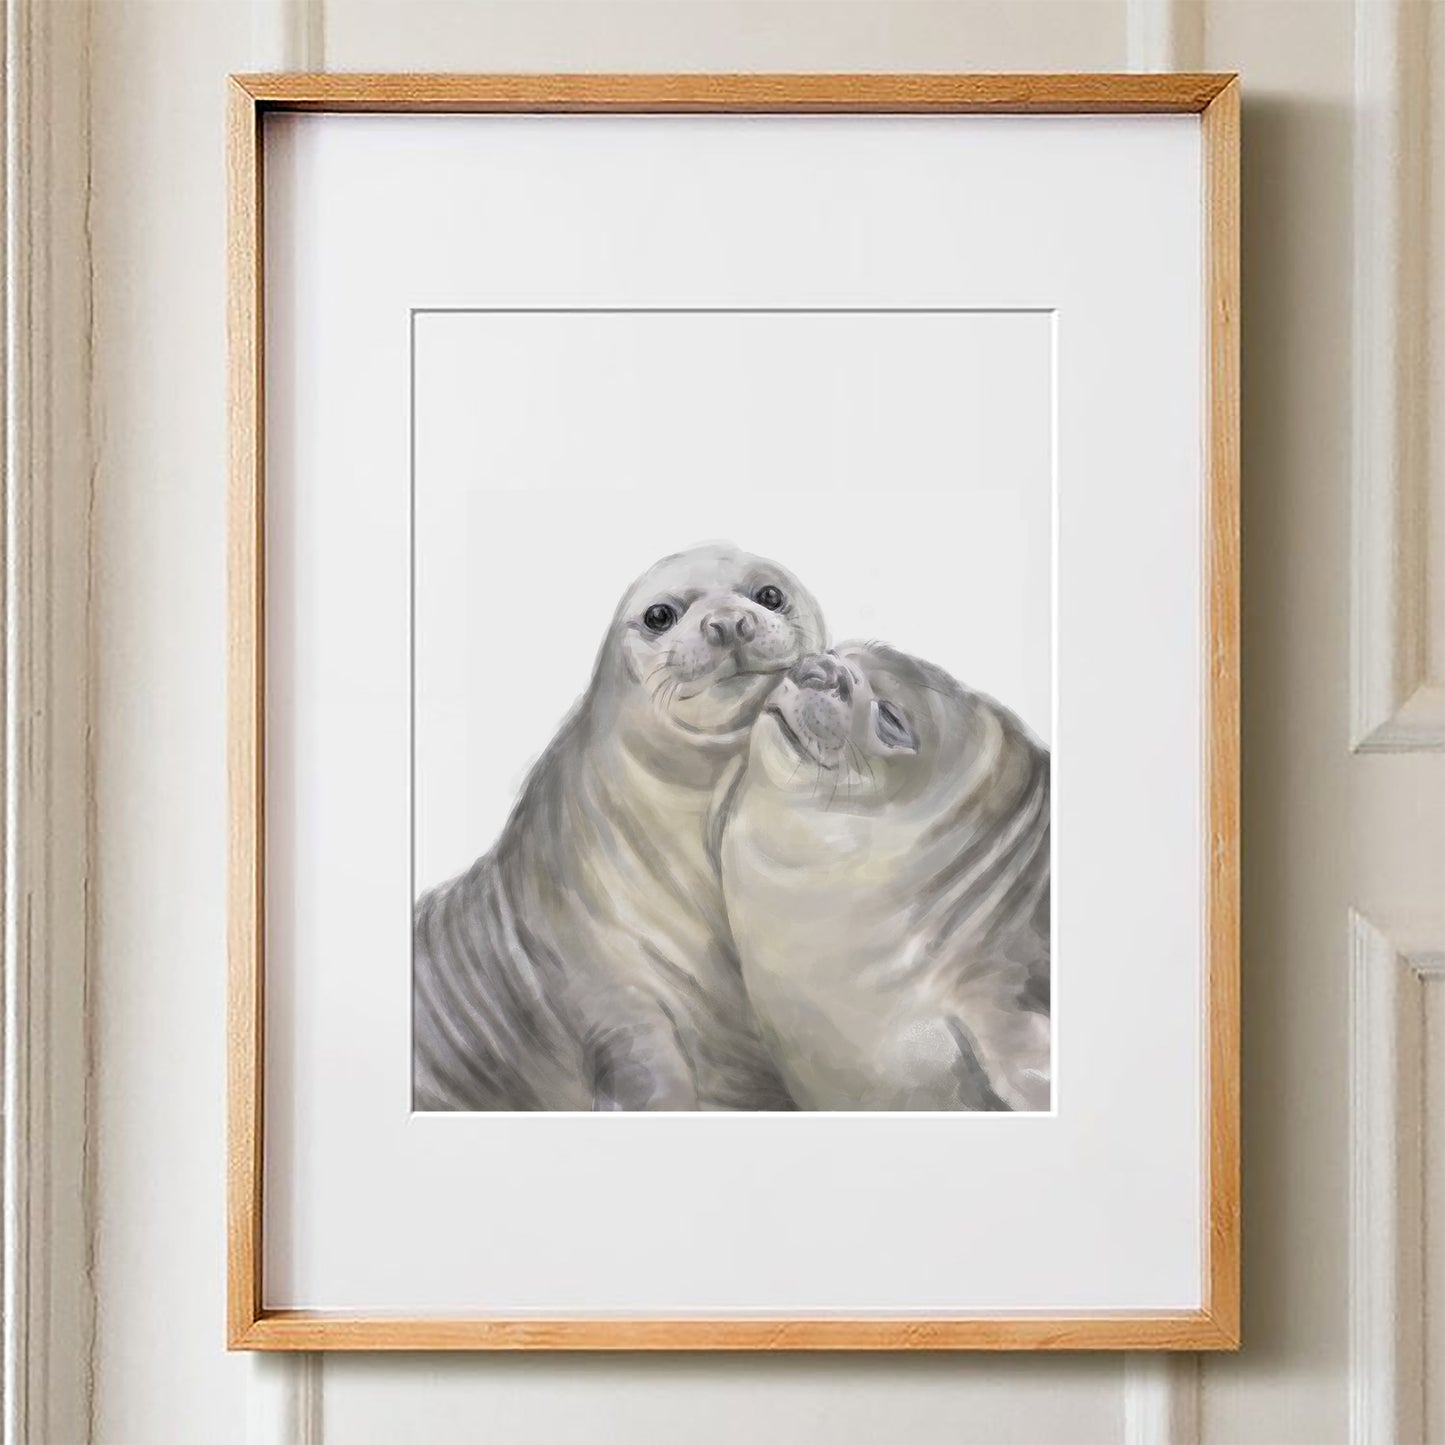 Seal in love Art Print